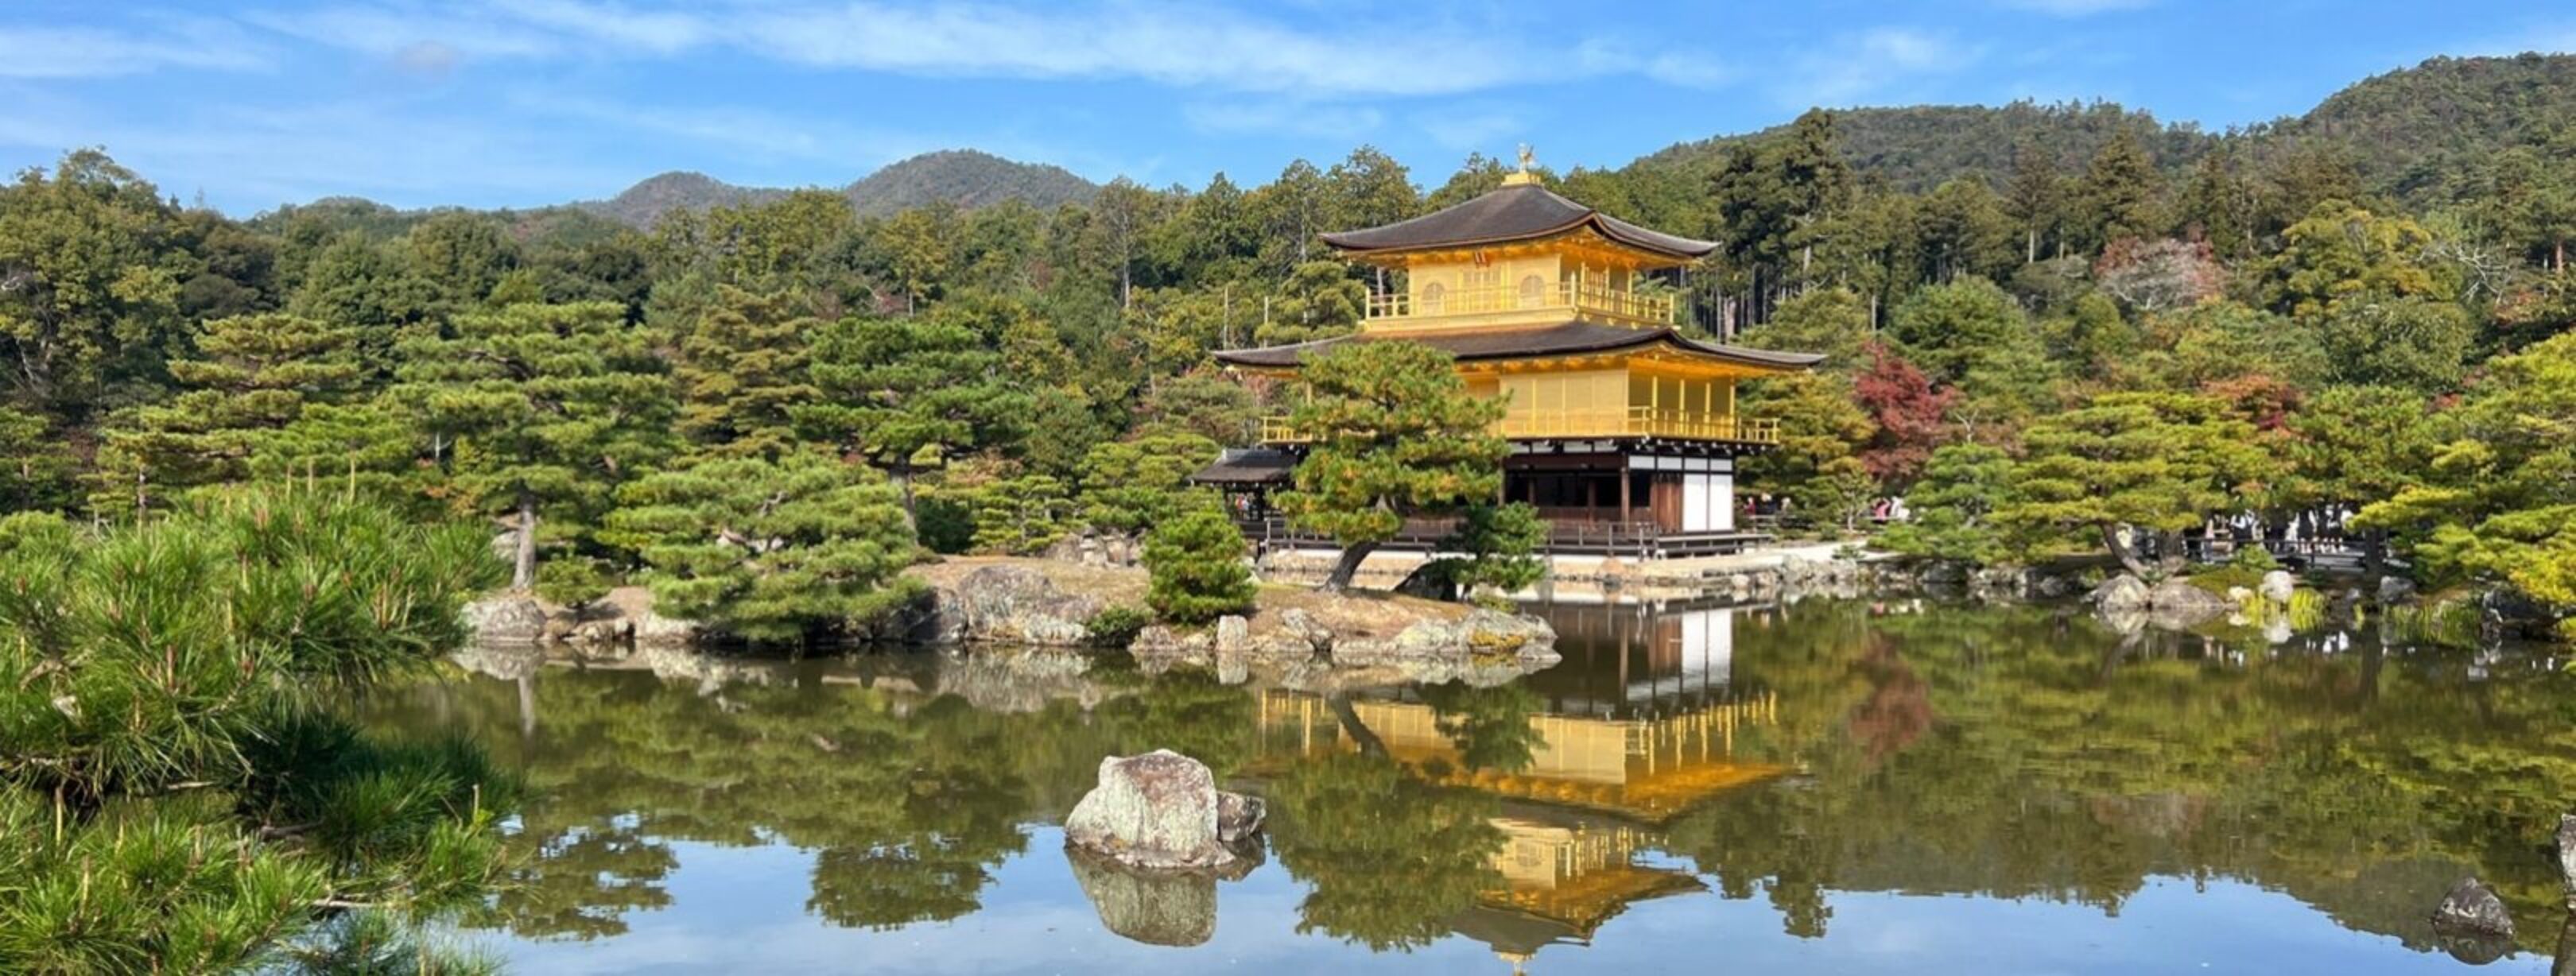 1620-tempeltuin Kinkaku-ji_de rotsformaties stellen schilpadden voor